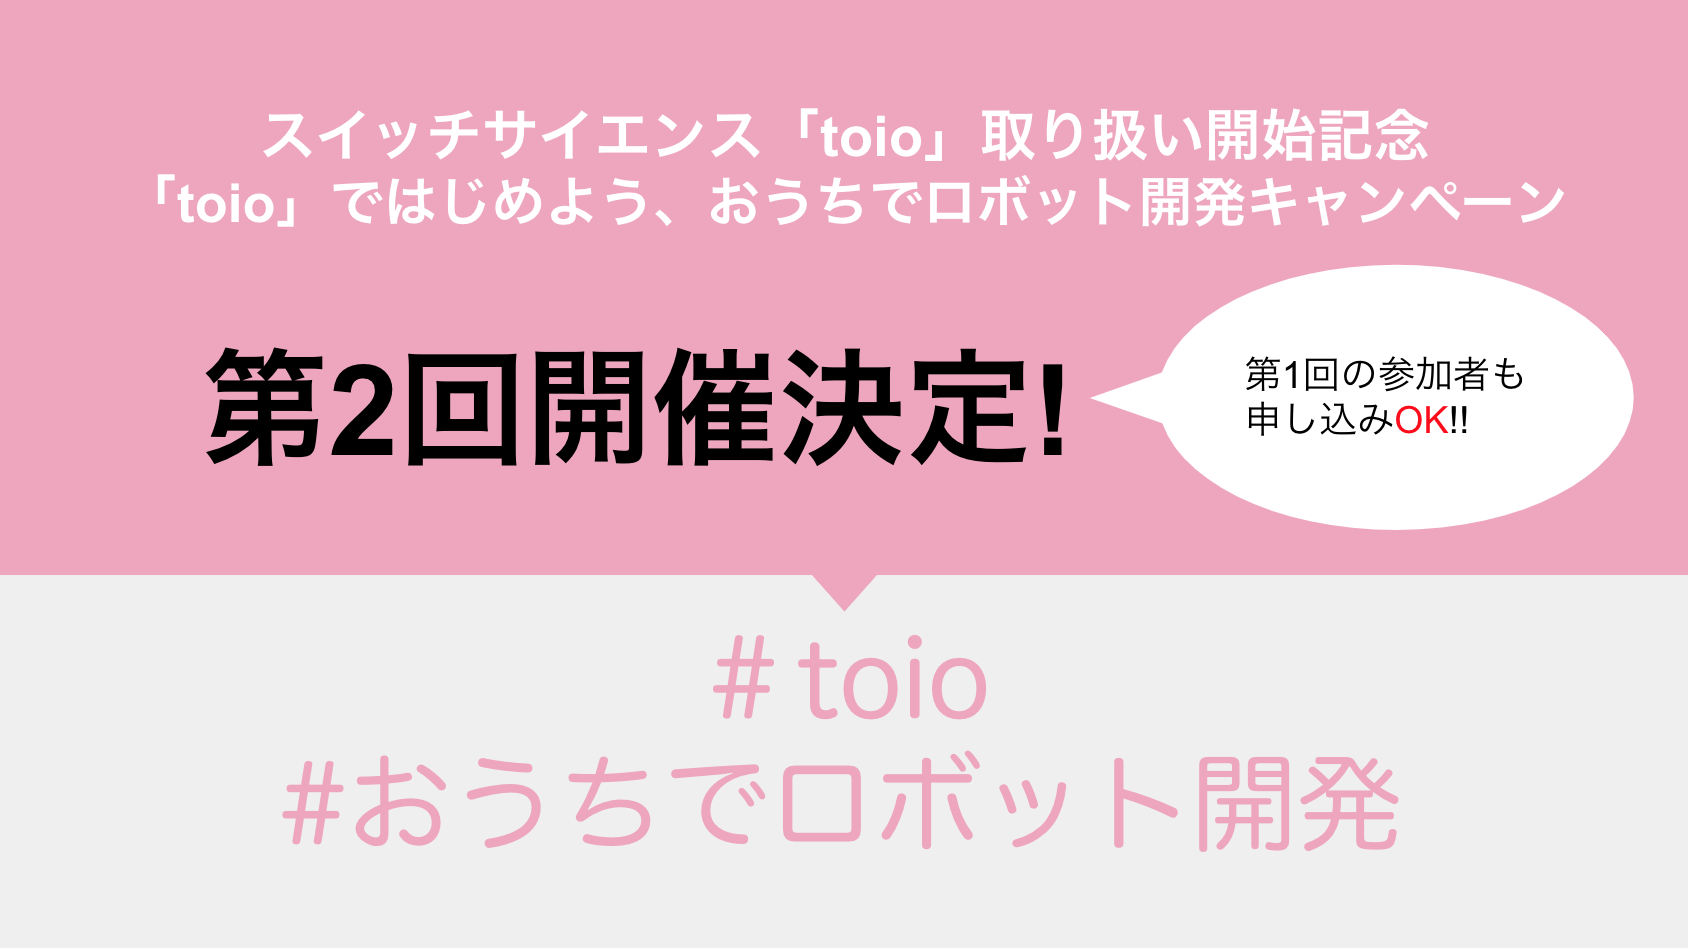 toio-campaign2